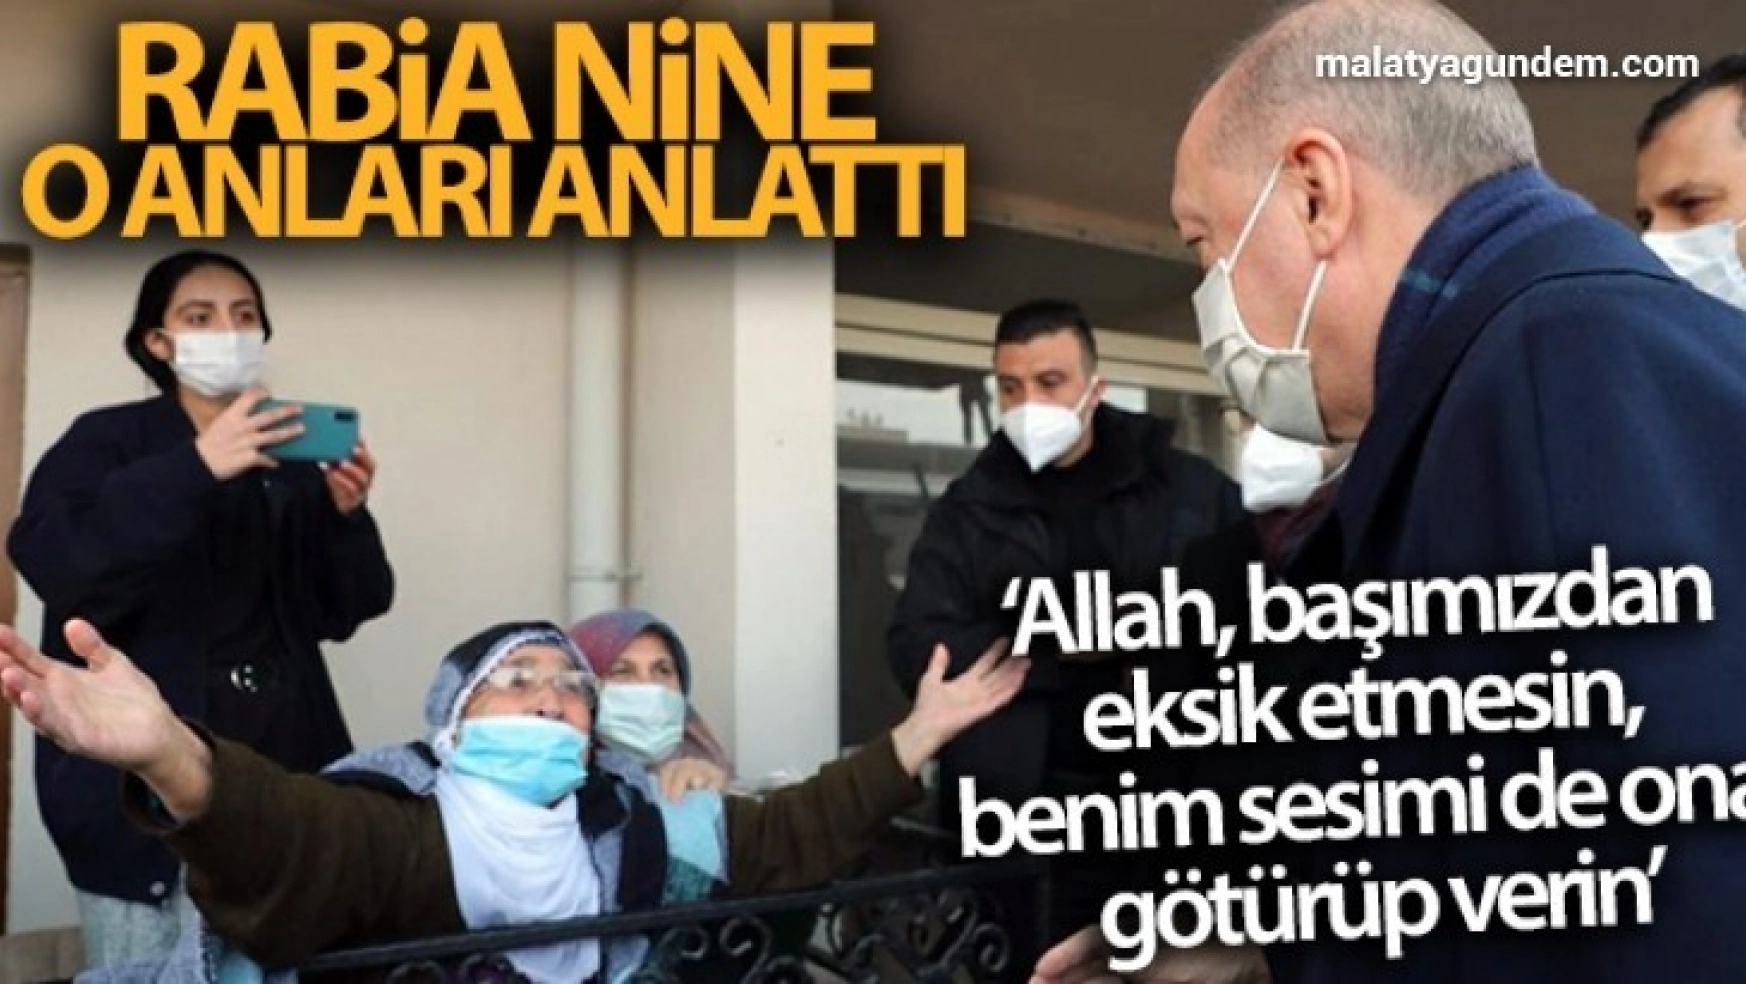 Cumhurbaşkanı Erdoğan'a sevgisiyle dikkat çeken Rabia nine, o anları anlattı